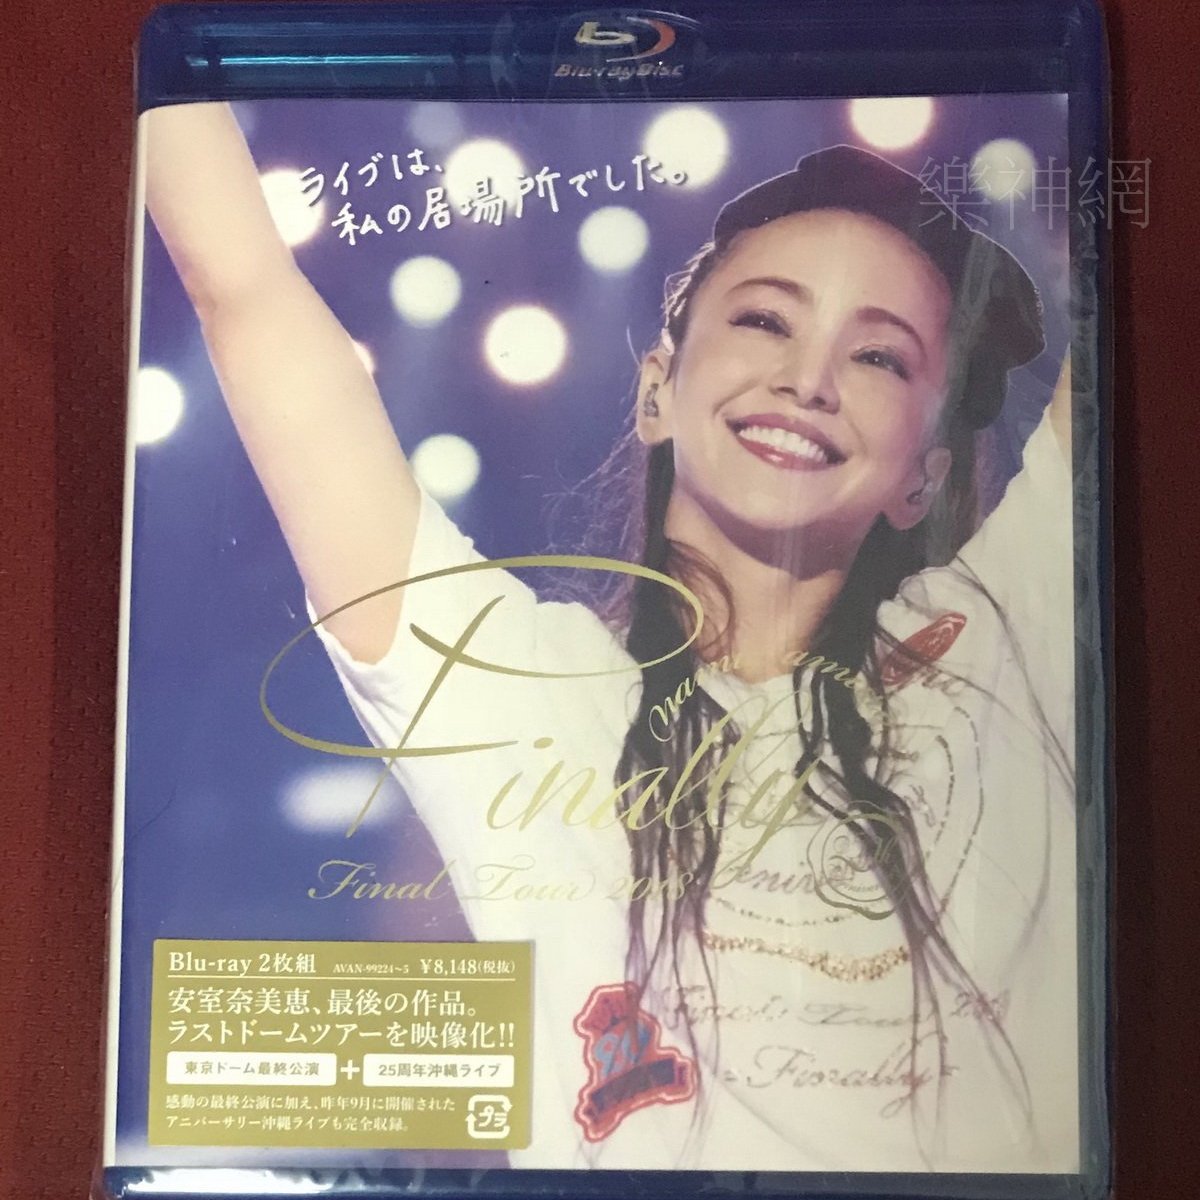 安室奈美惠namie amuro Final Tour 2018 Finally日版藍光Blu-ray通常盤